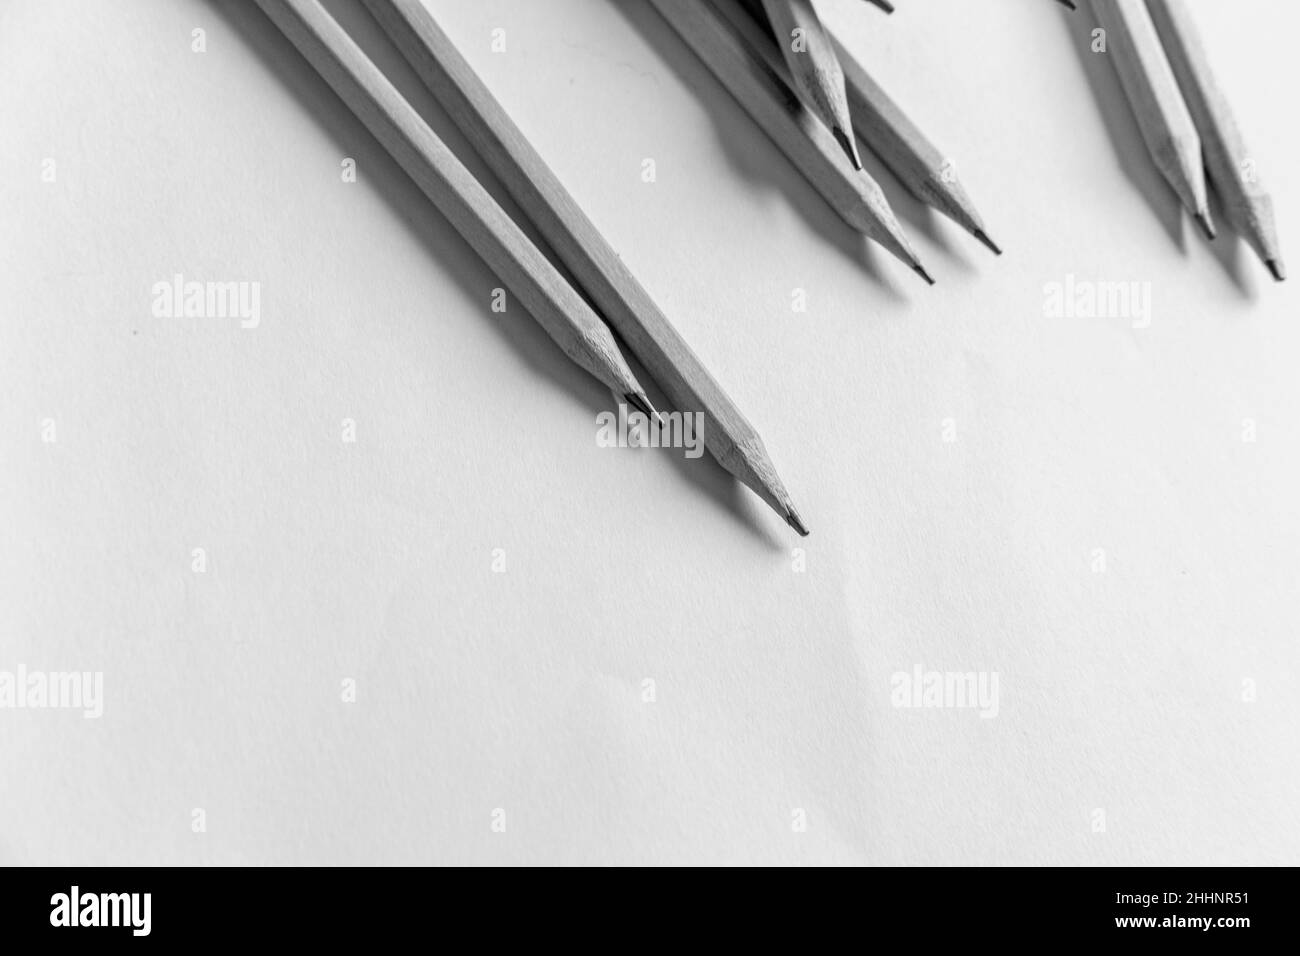 photo noir et blanc de crayons en bois sur fond uni Banque D'Images